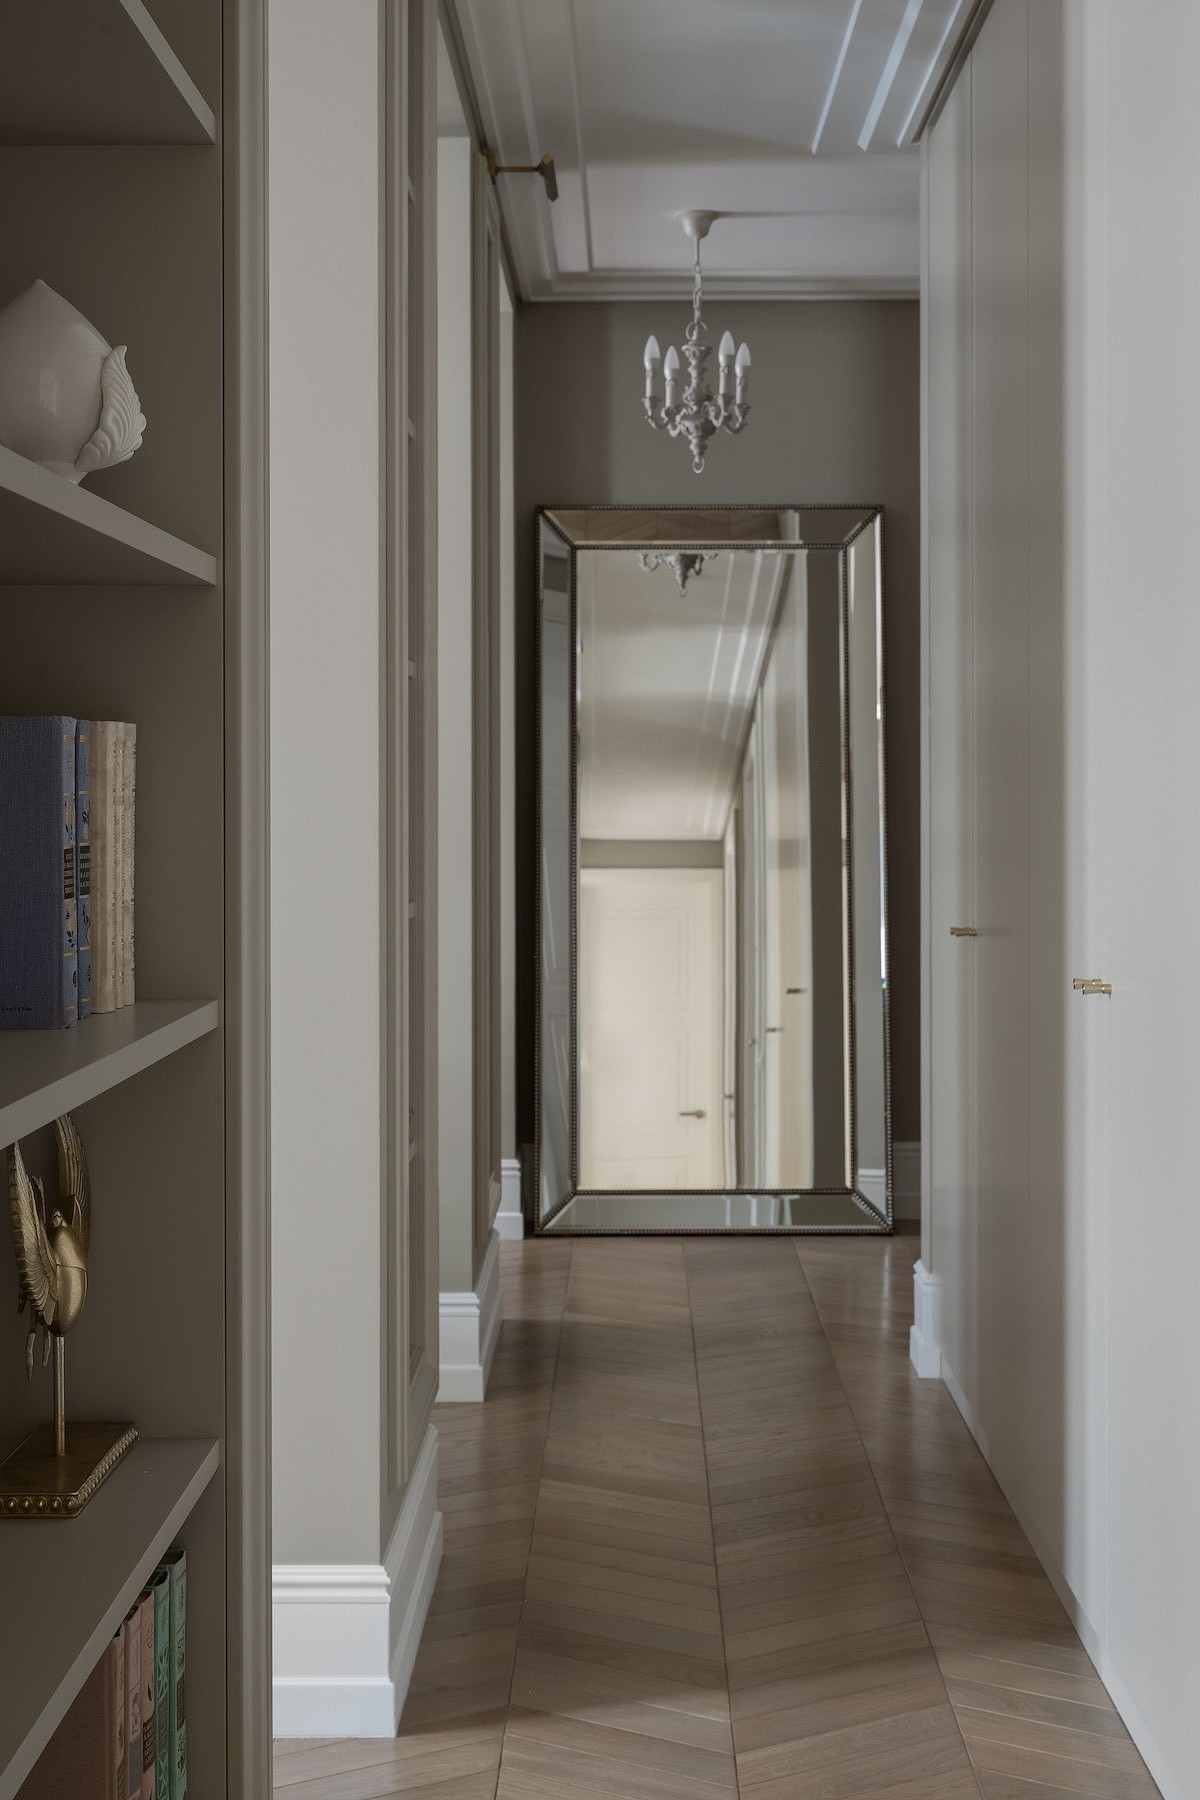 Квартира-будуар: сложные цвета, максимум функциональности и безупречный классический стиль24